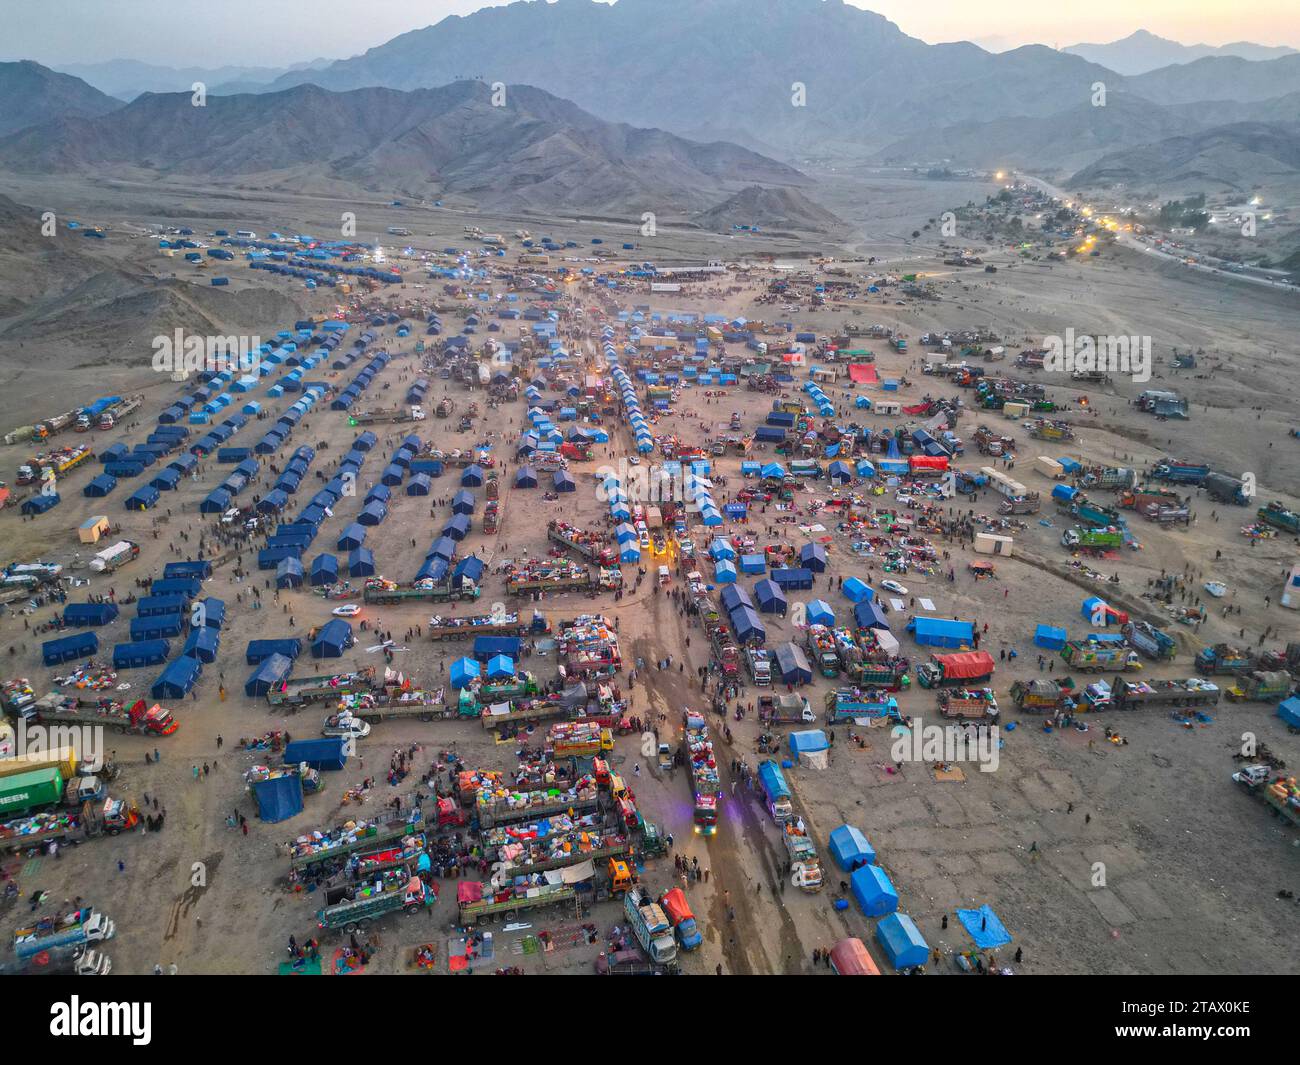 Afghanistan-Flüchtlinge, die Pakistan verlassen müssen: Ein Drohnenblick auf ein Flüchtlingslager mit Tausenden verarmter Menschen. Stockfoto